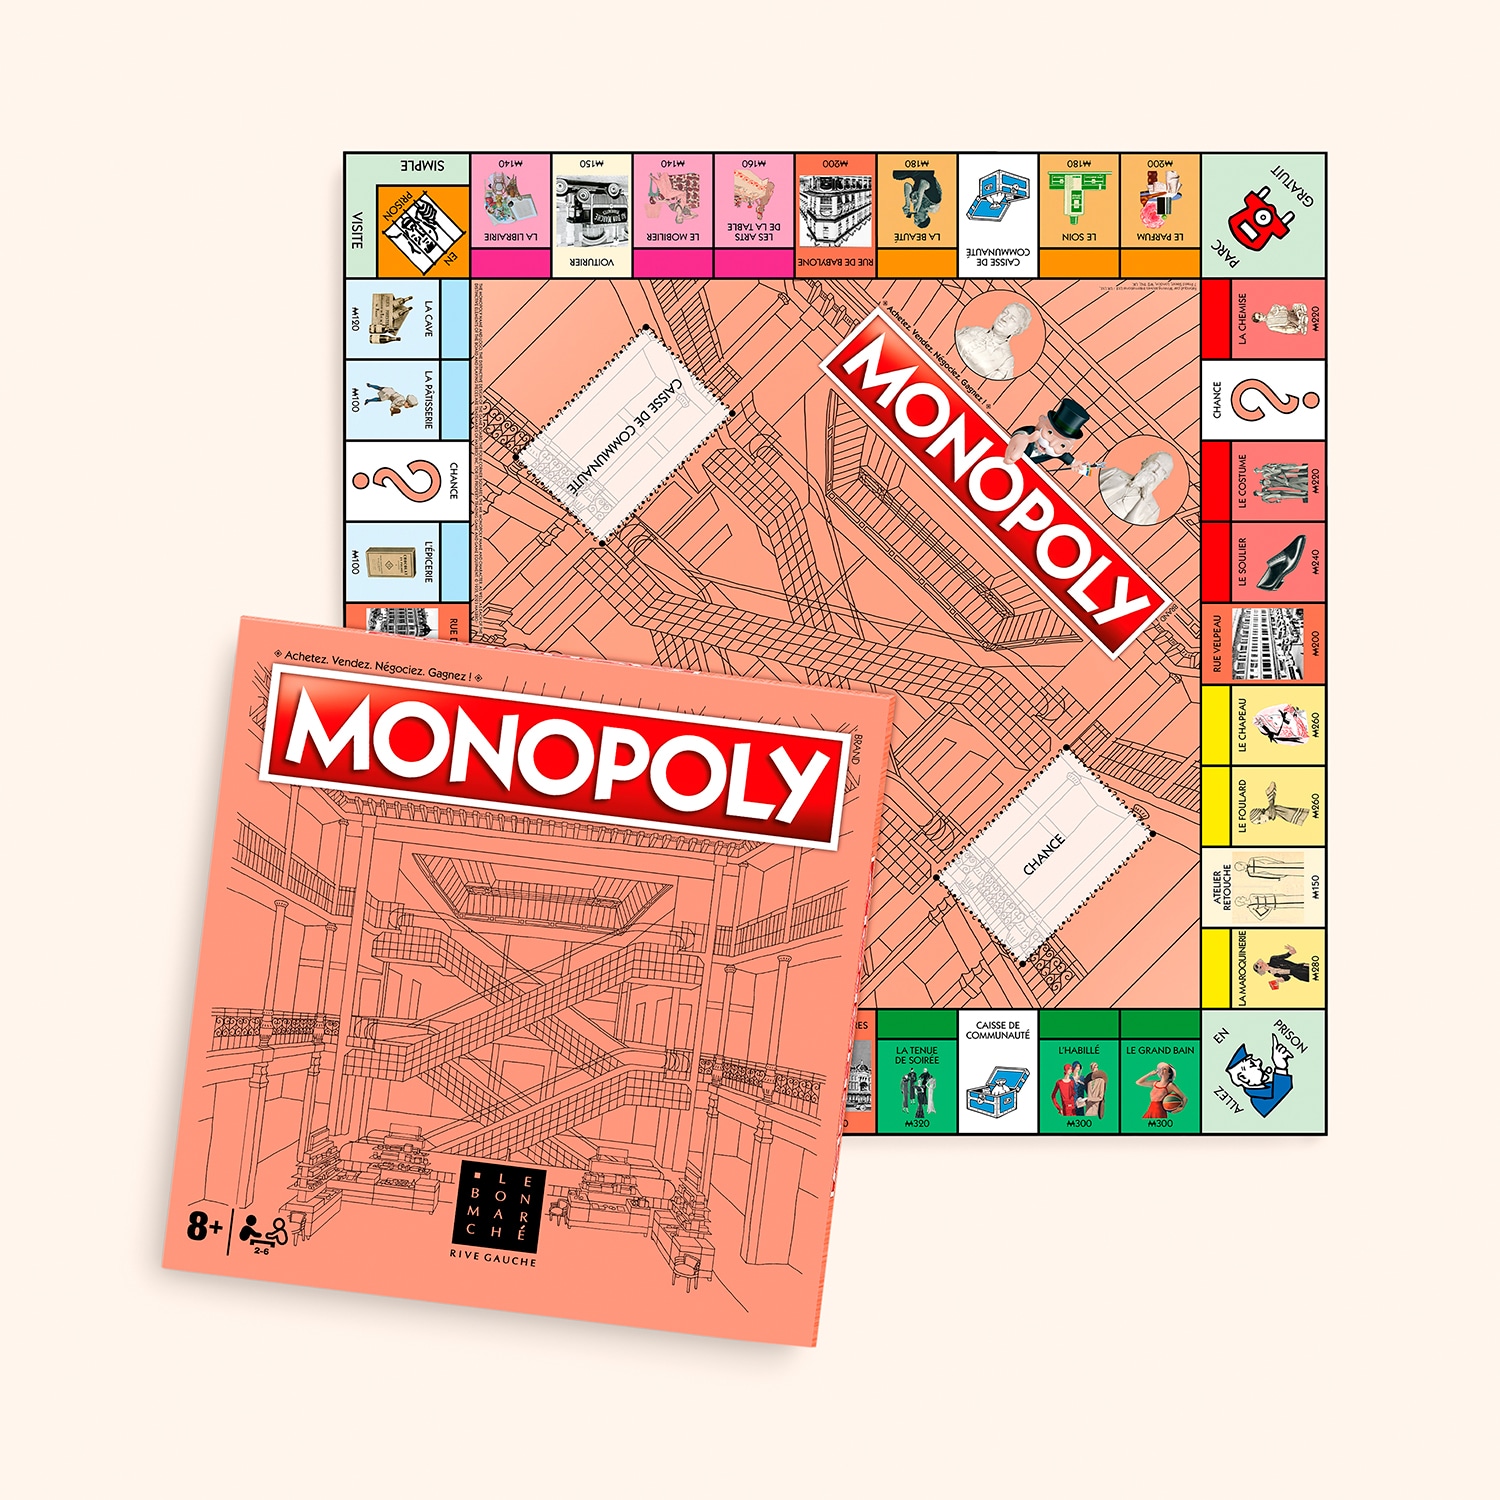 Monopoly Le Bon Marché Rive Gauche